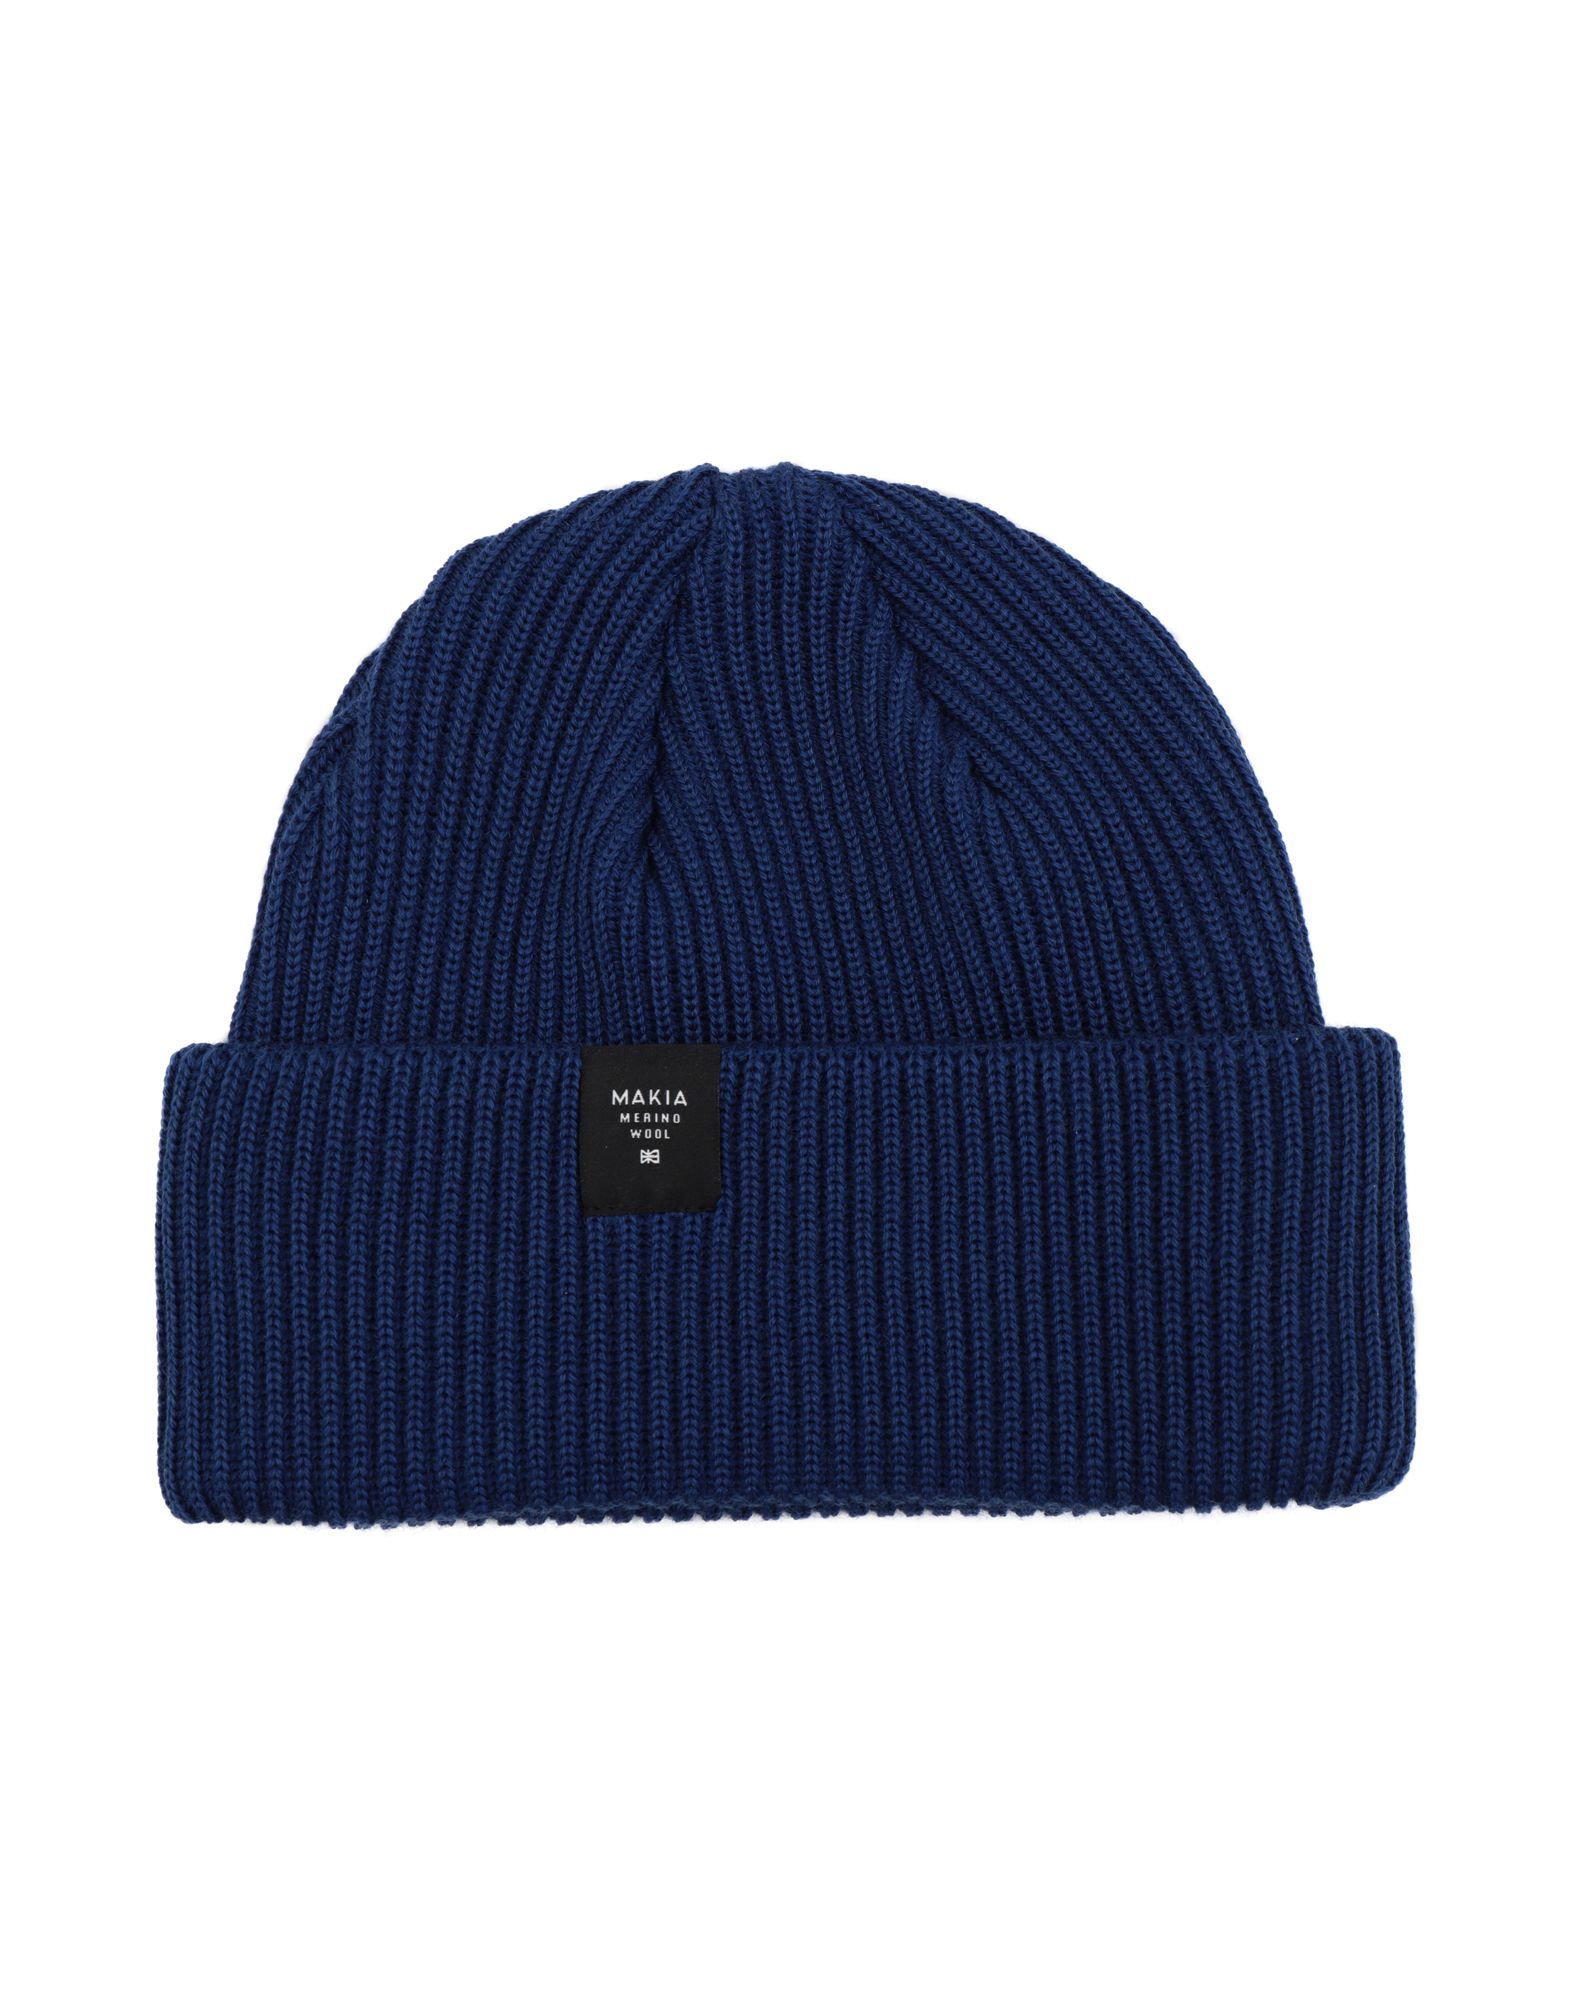 《送料無料》MAKIA Unisex 帽子 ブルー one size ウール 100% MERINO CAP